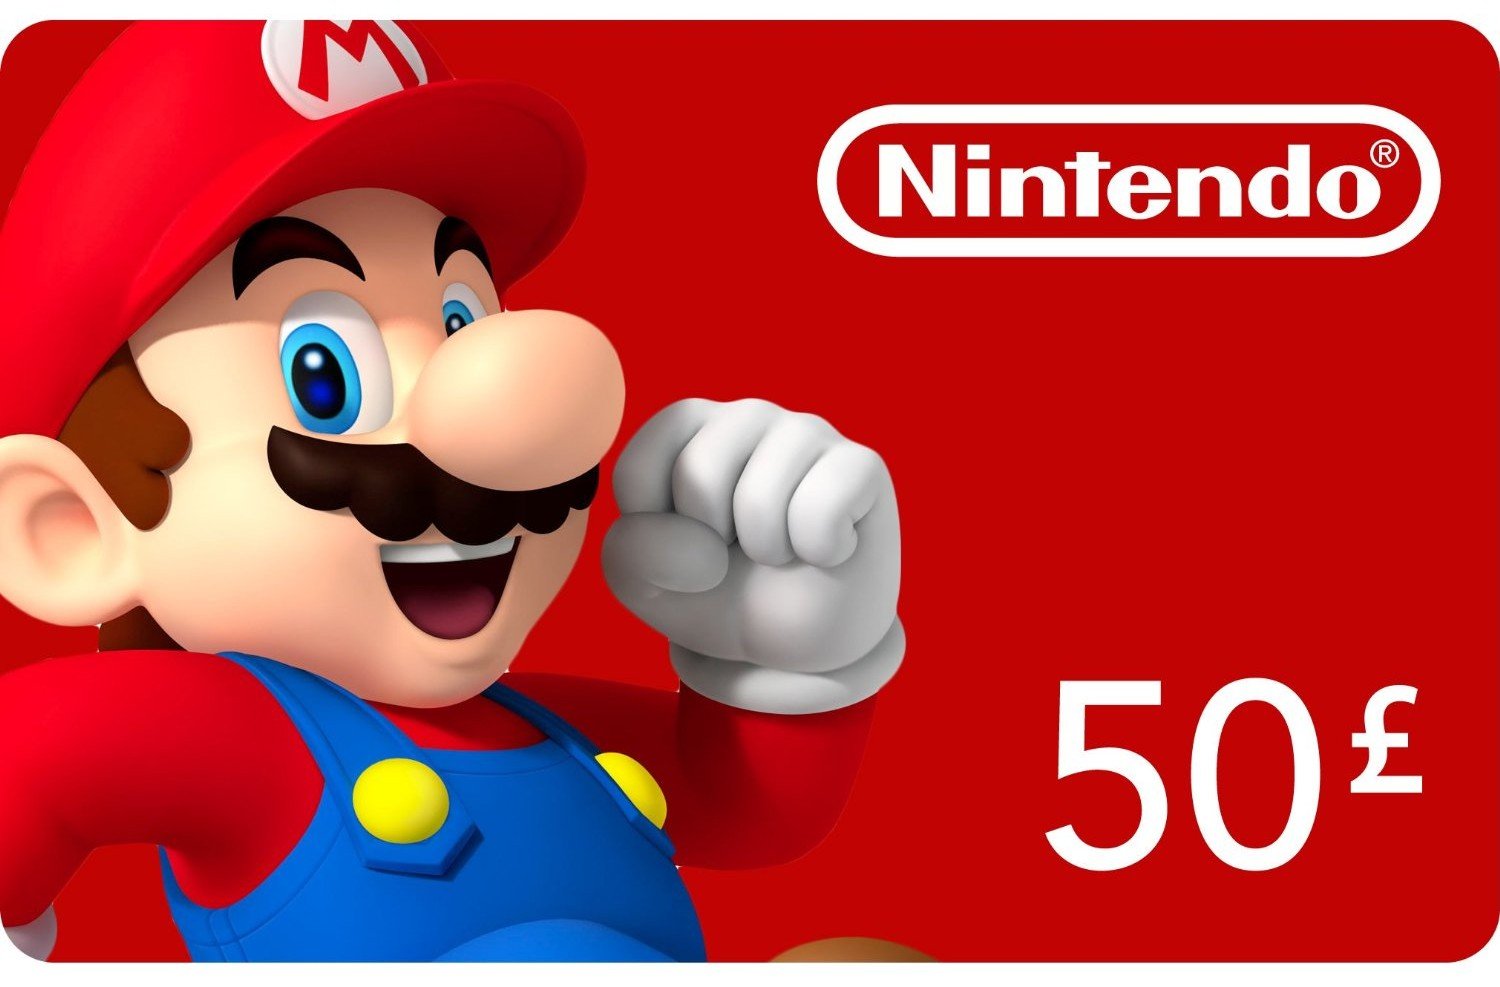 Nintendo eshop купить